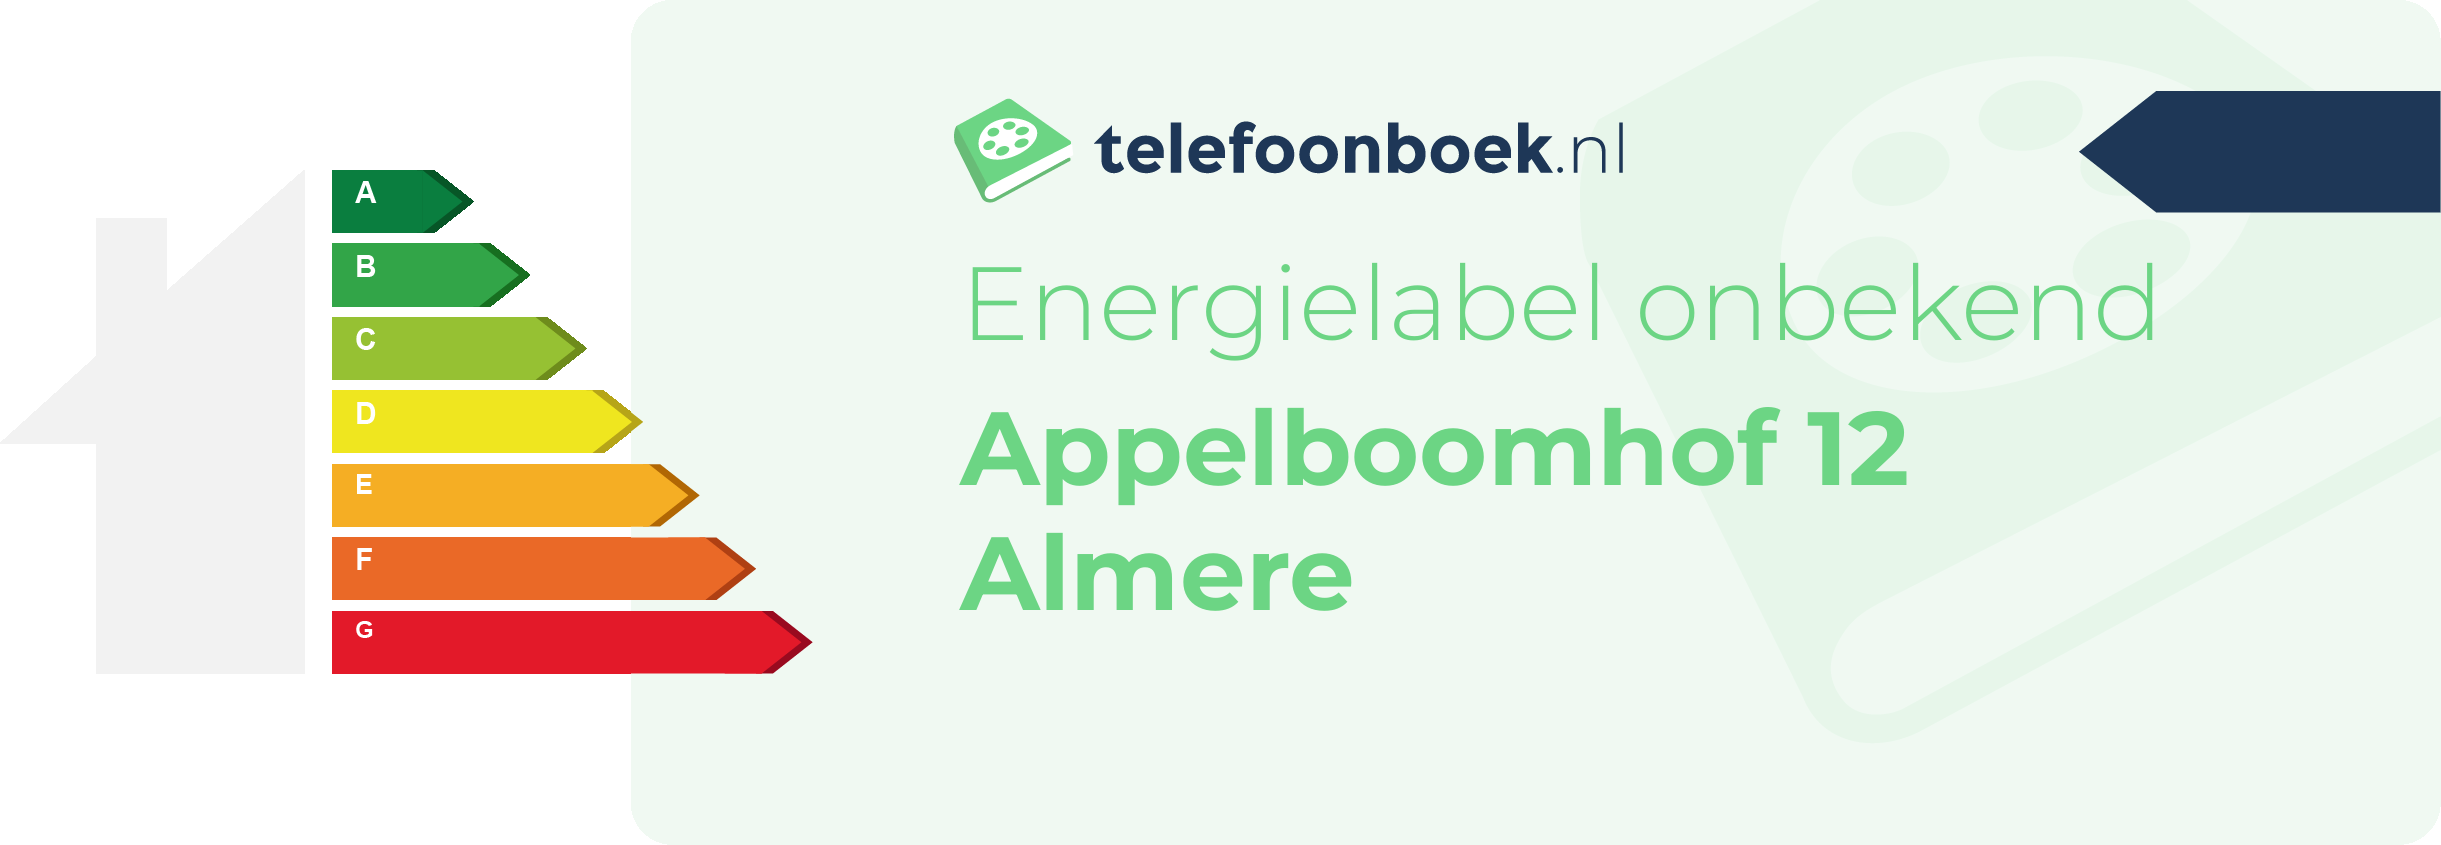 Energielabel Appelboomhof 12 Almere